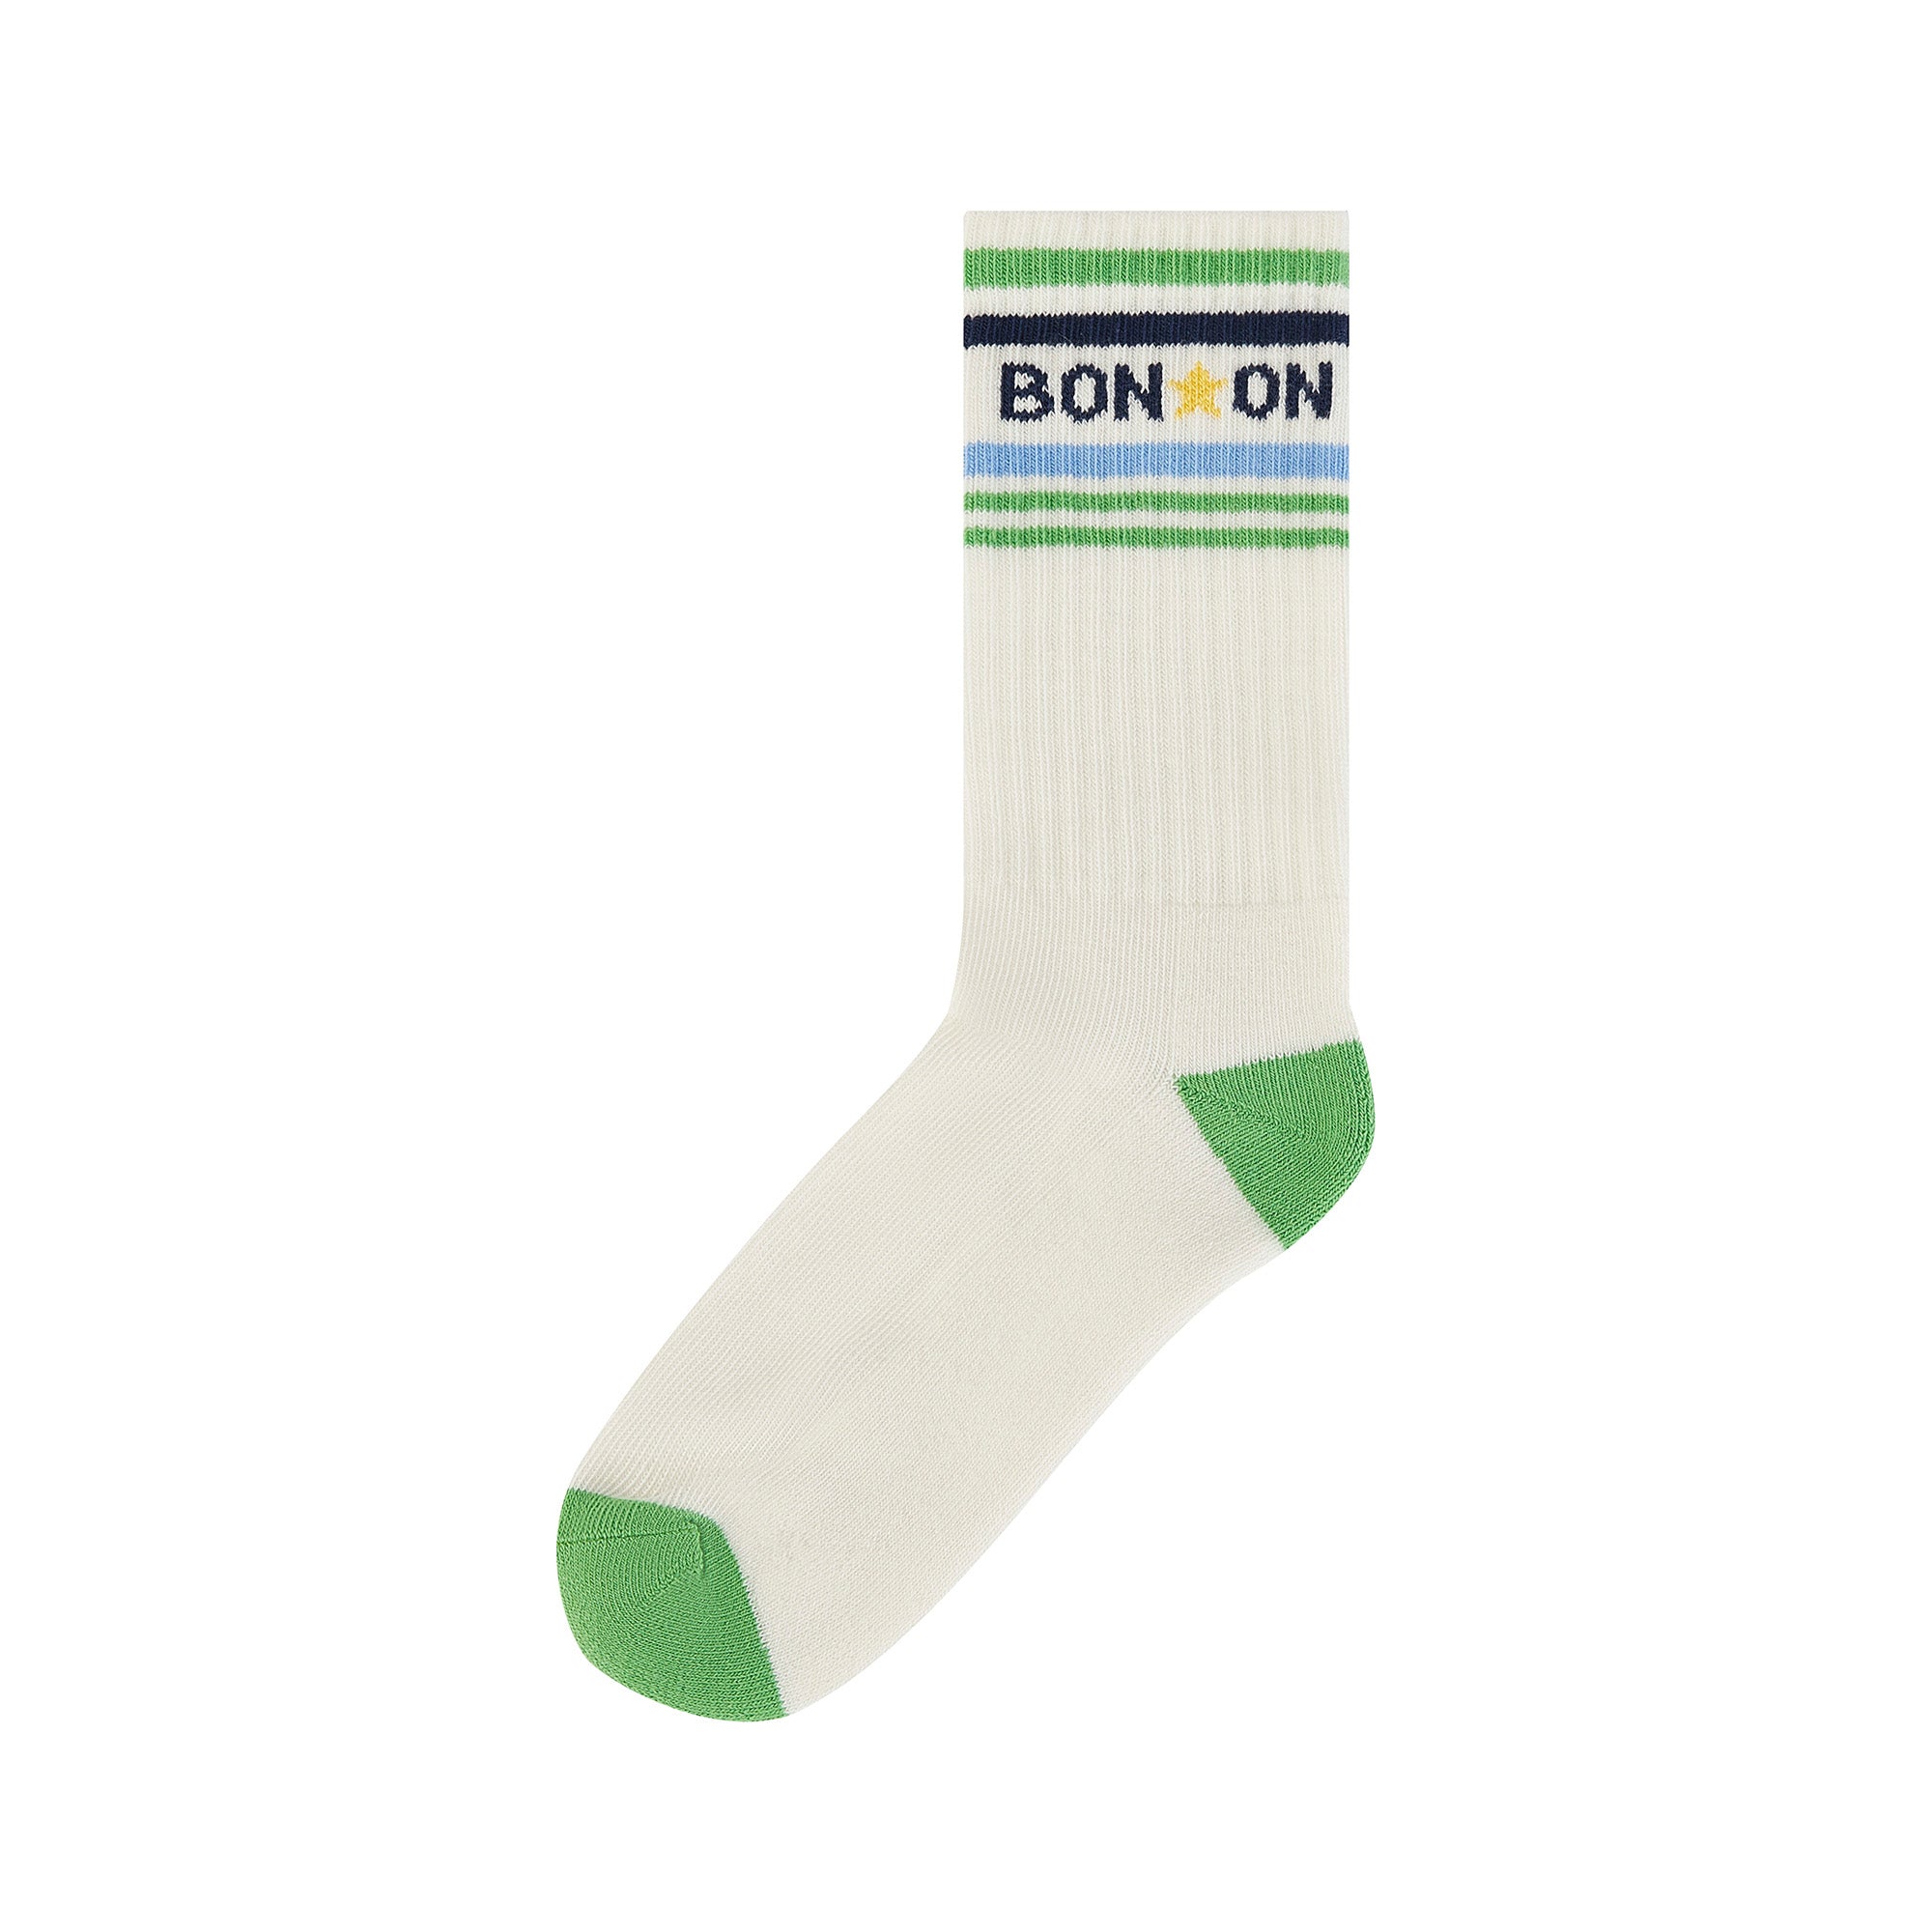 Boys White Cotton Socks(2 Pack)